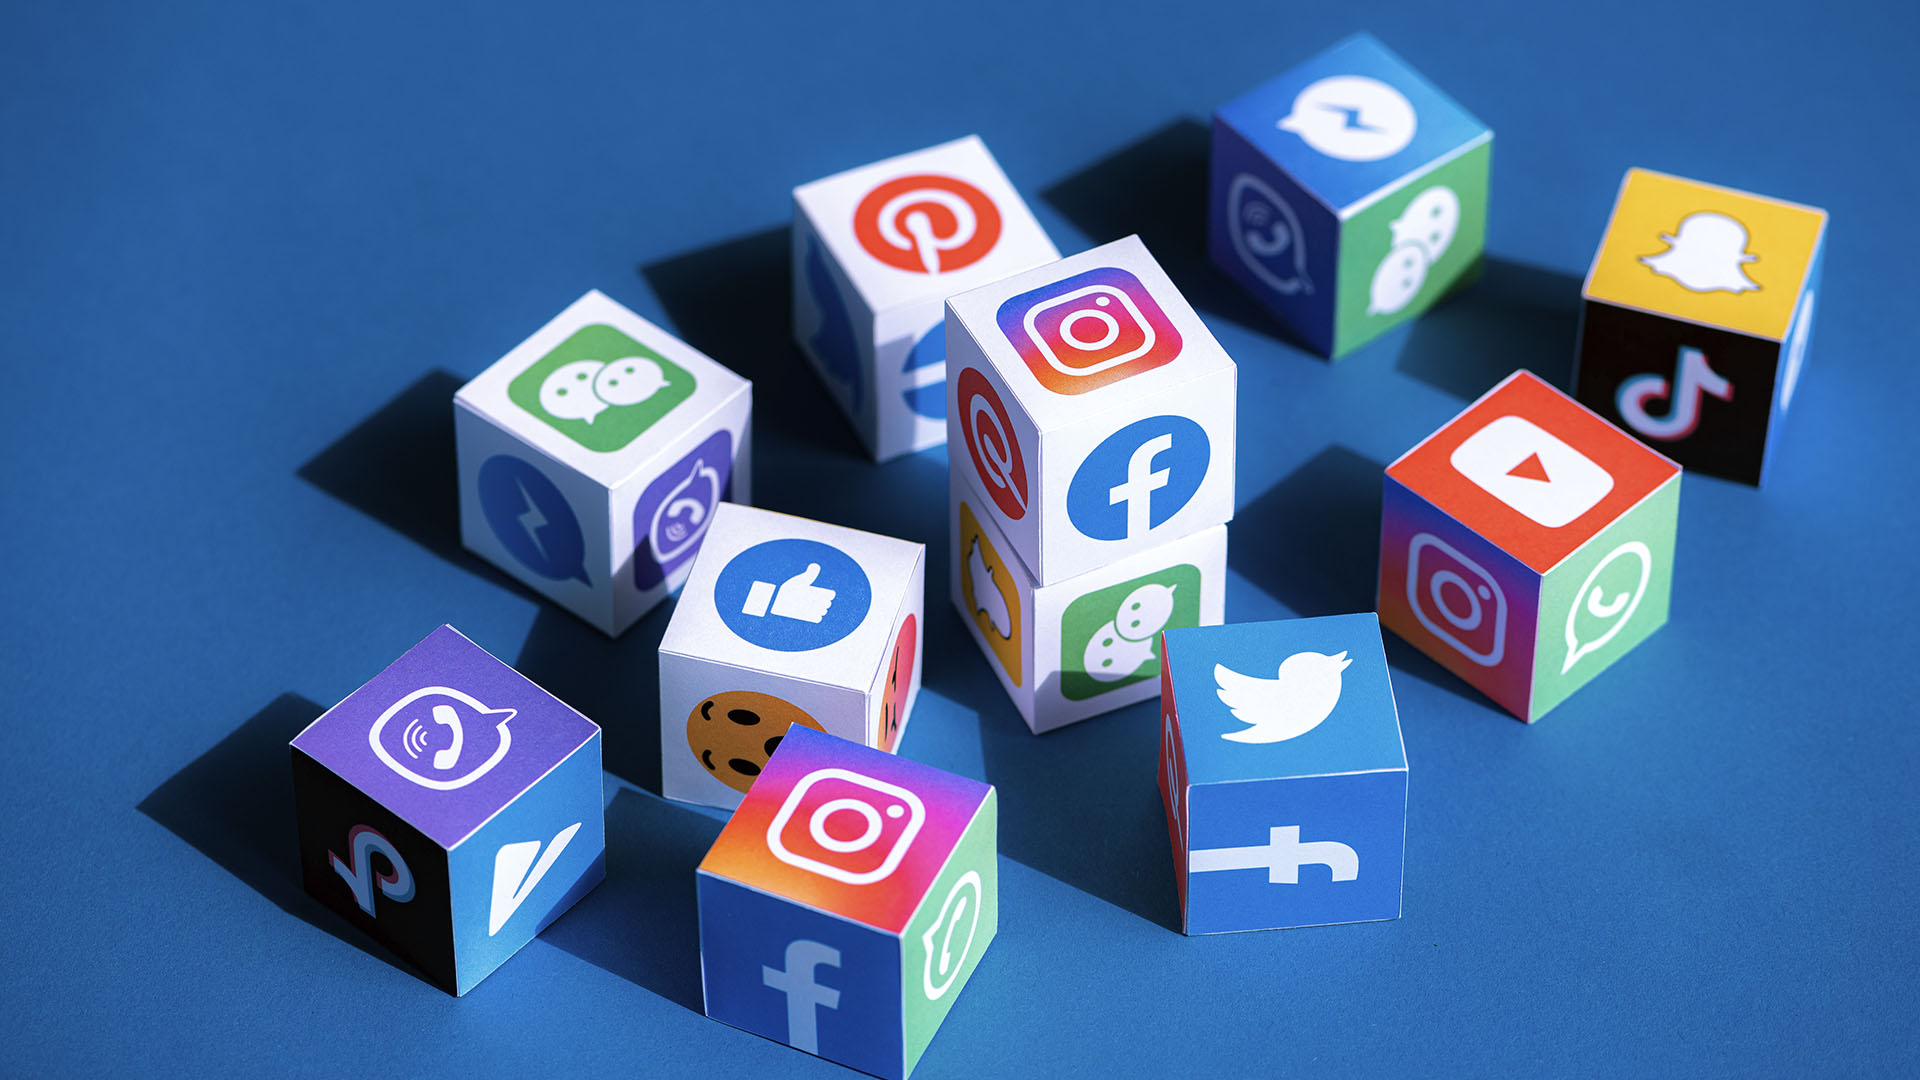 20 Top Social Media Tools for 2023